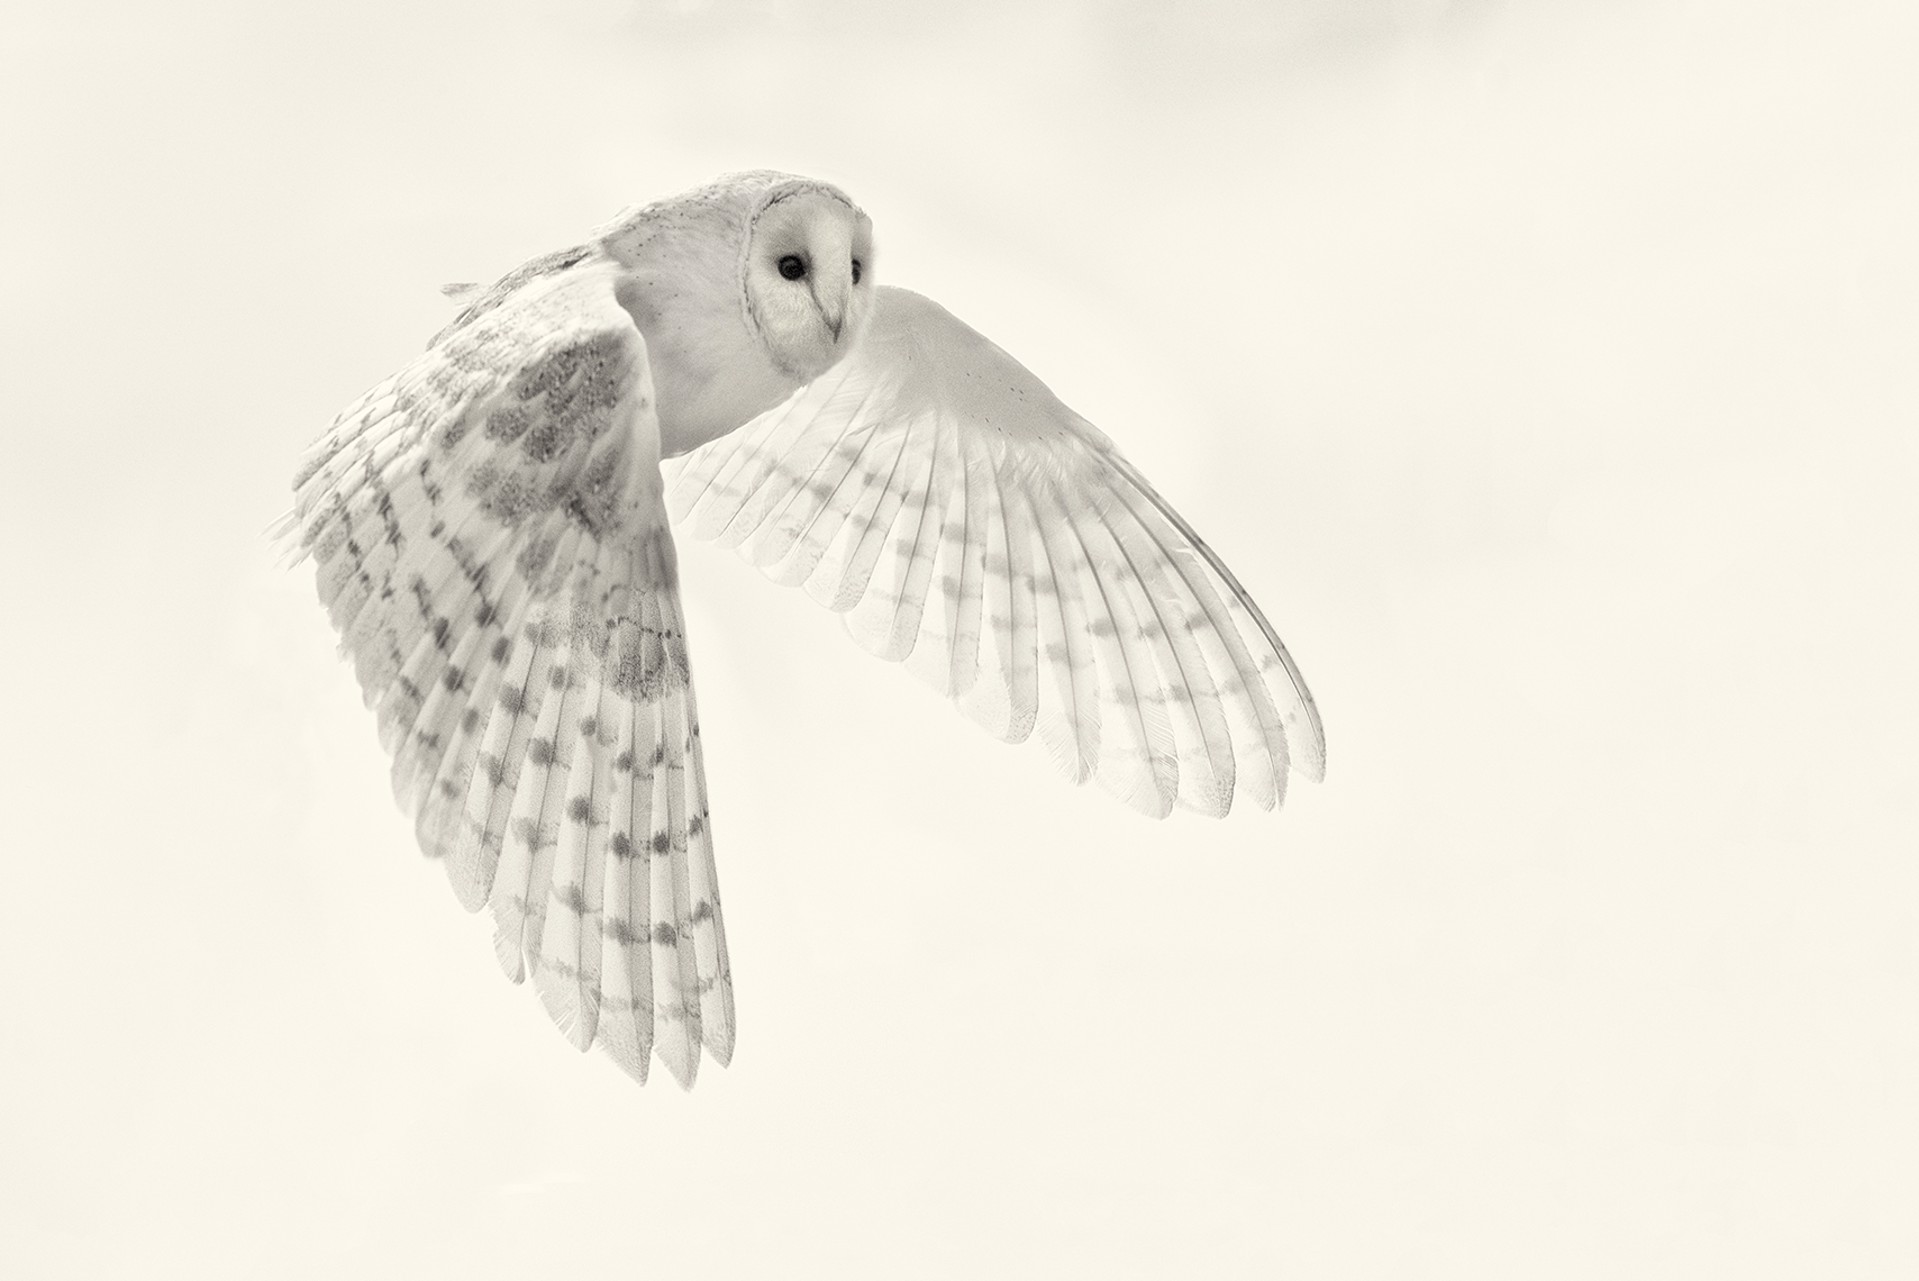 Barn Owl Study 4 (edition of 12) by Beth Moon